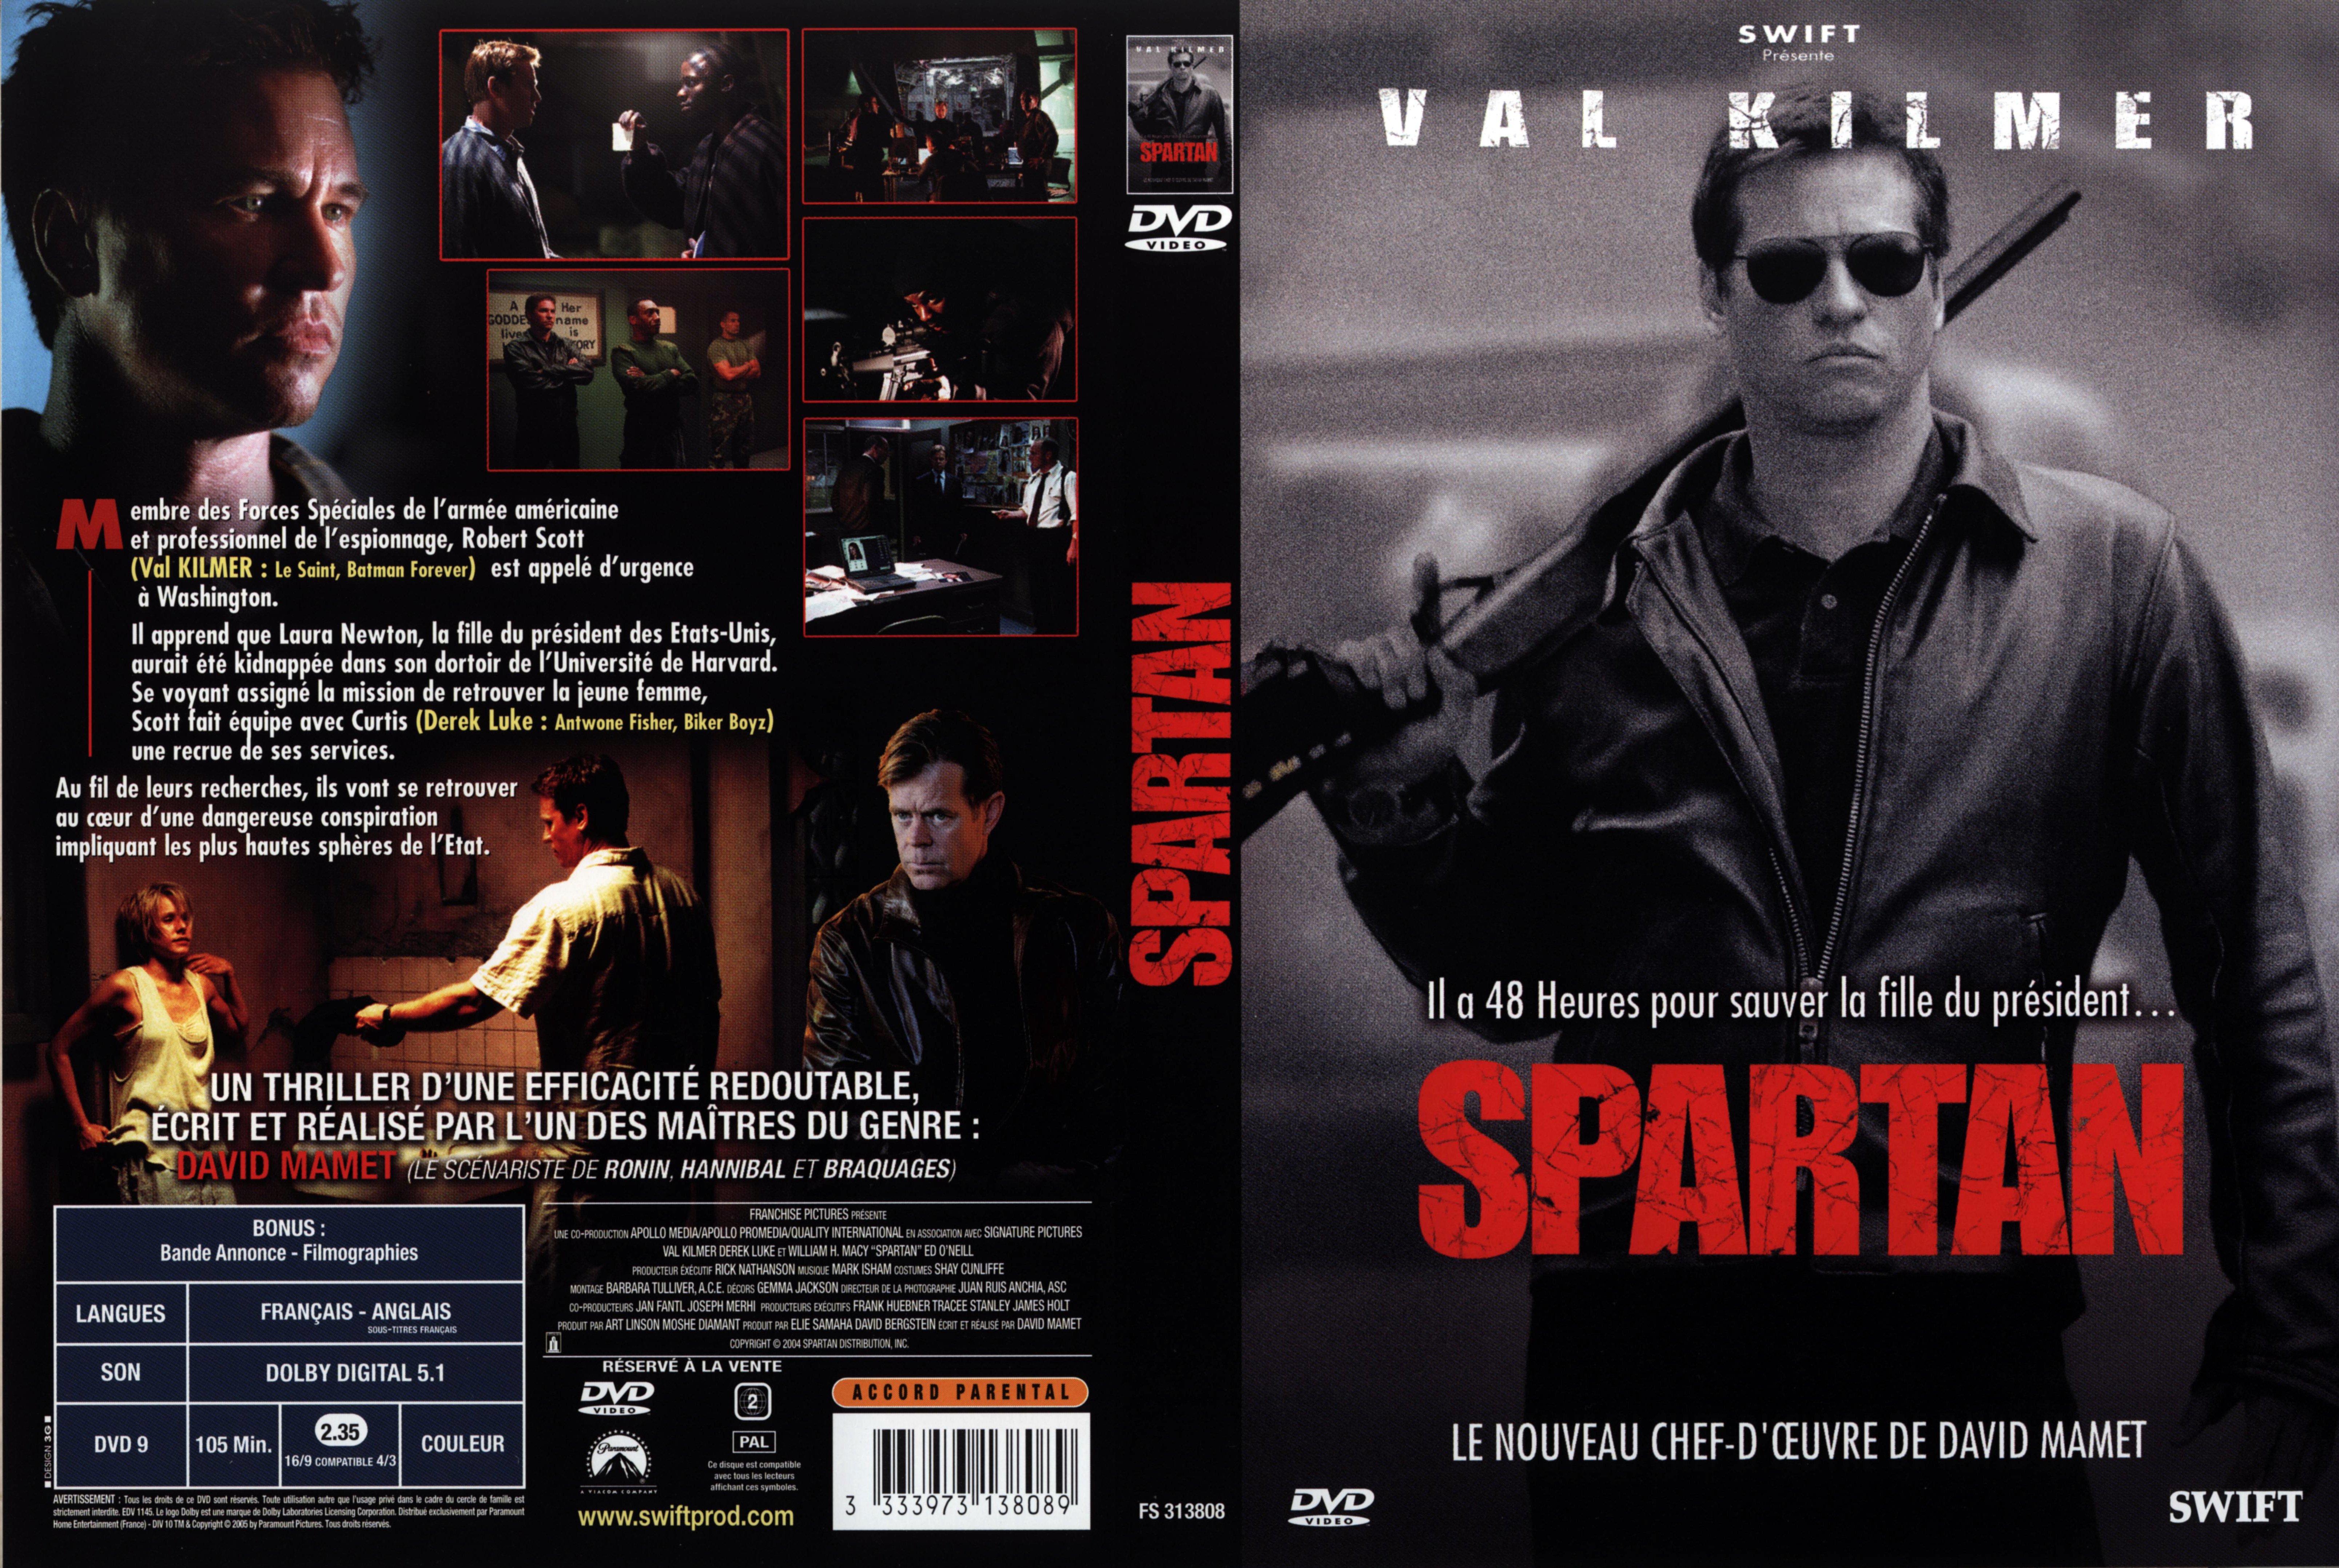 Jaquette DVD Spartan